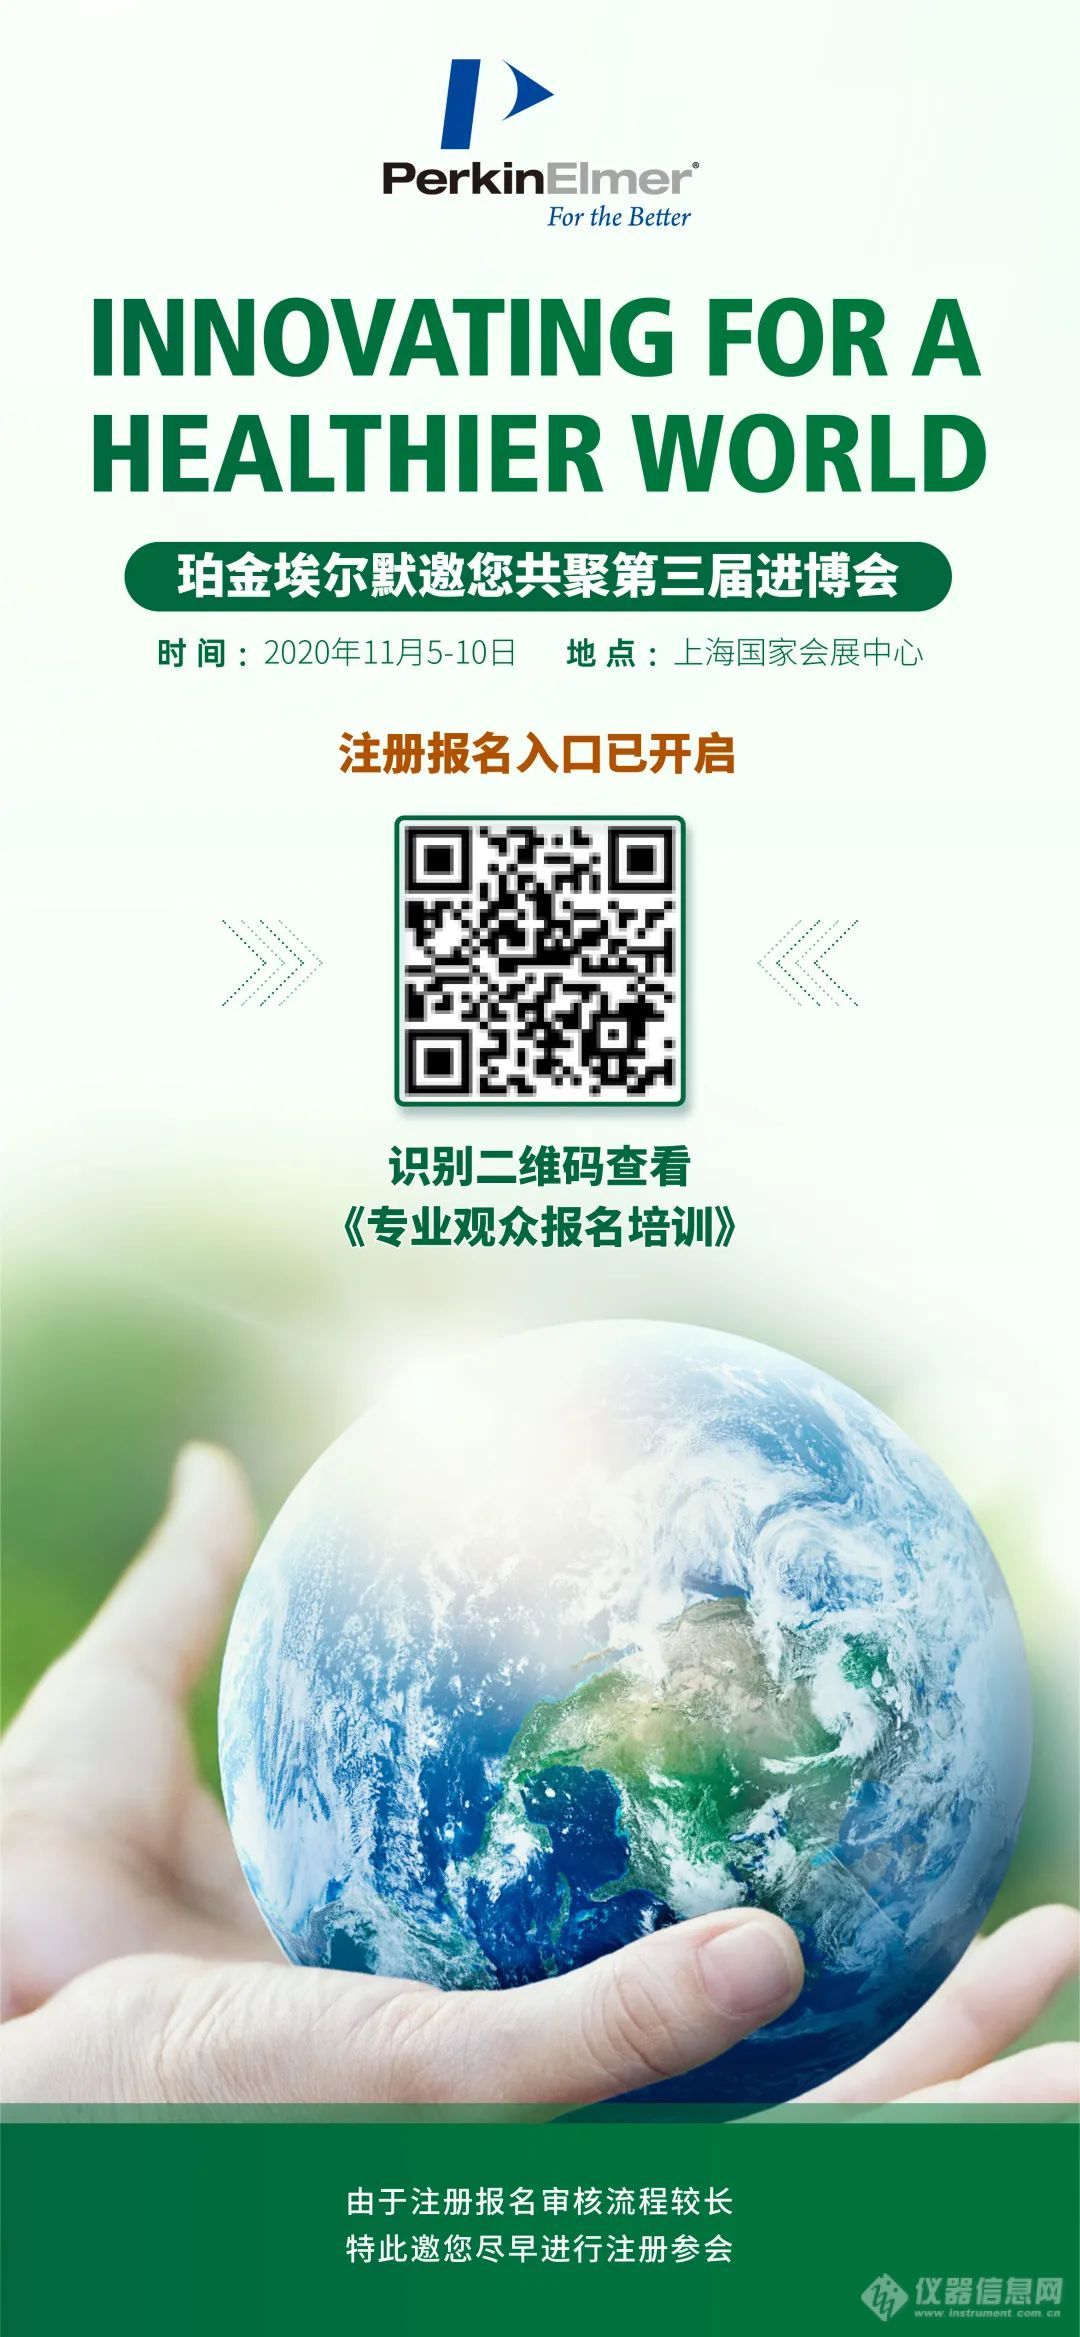 WeChat Image_20200814102057.jpg